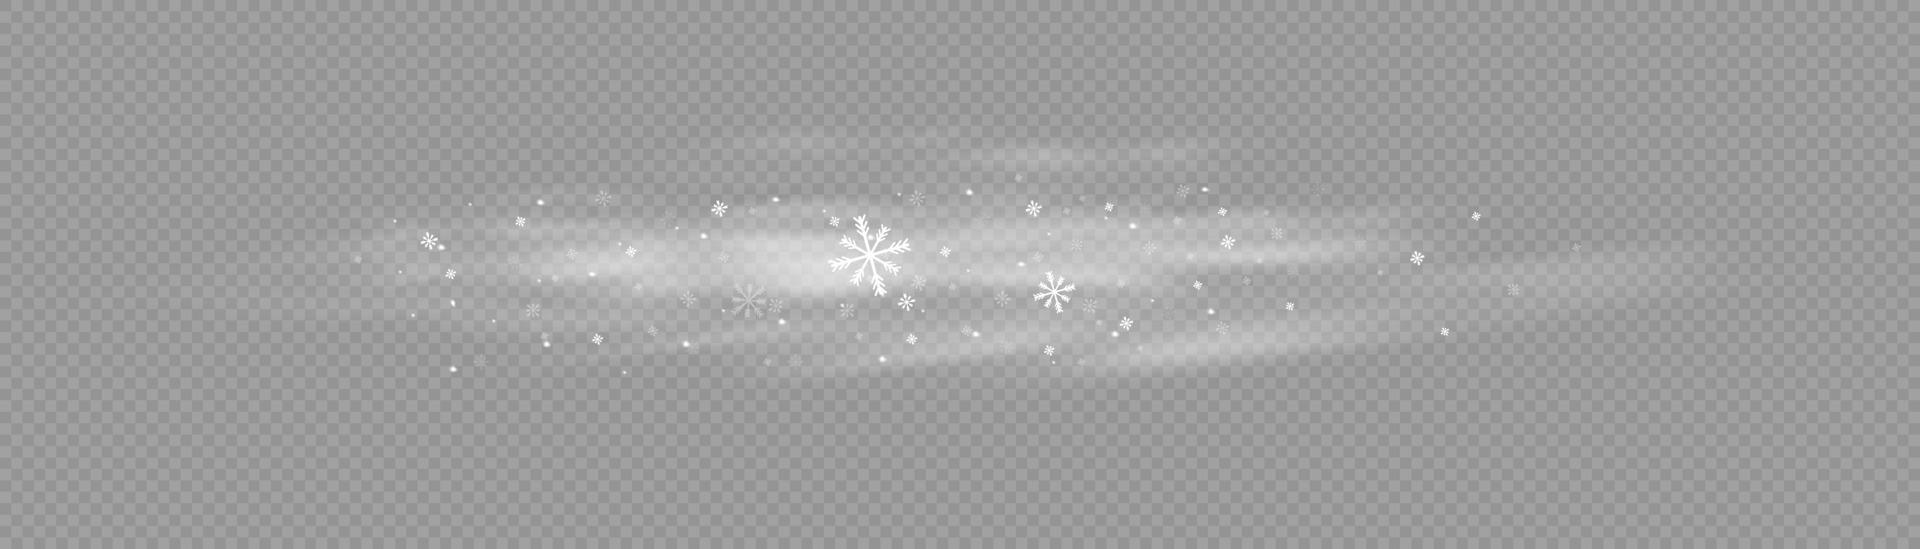 neve e vento. ilustração de element.vector decorativo gradiente branco. inverno e neve com neblina. vento e neblina. vetor